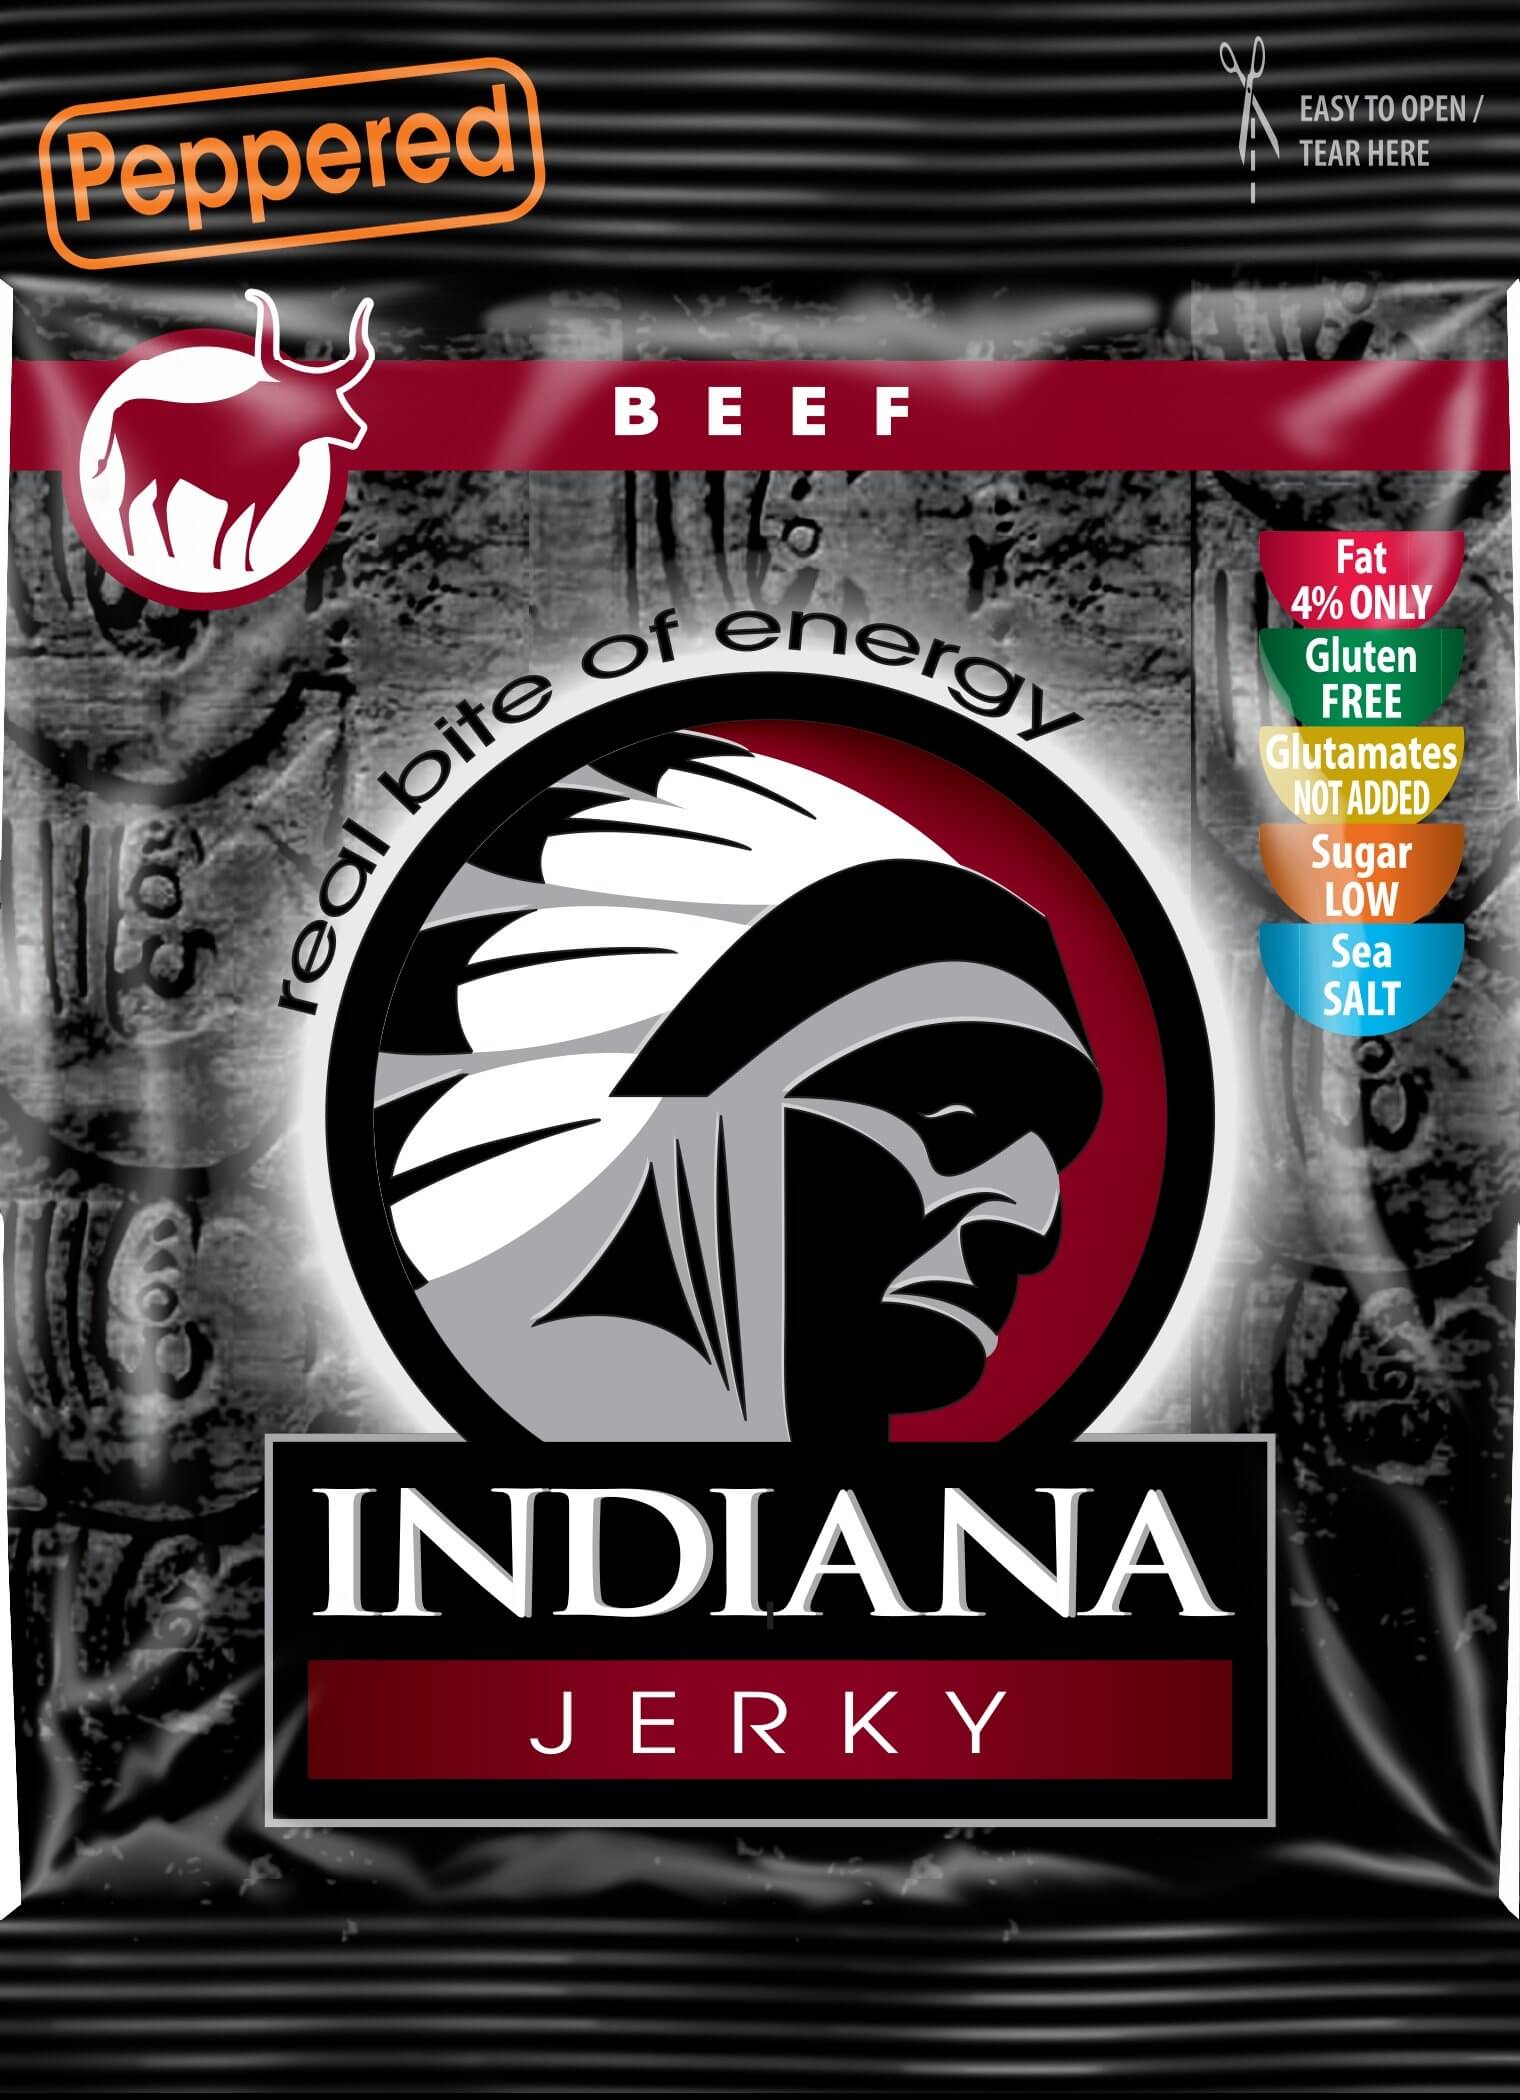 Indiana Indiana Jerky beef (hovězí) Peppered 25 g